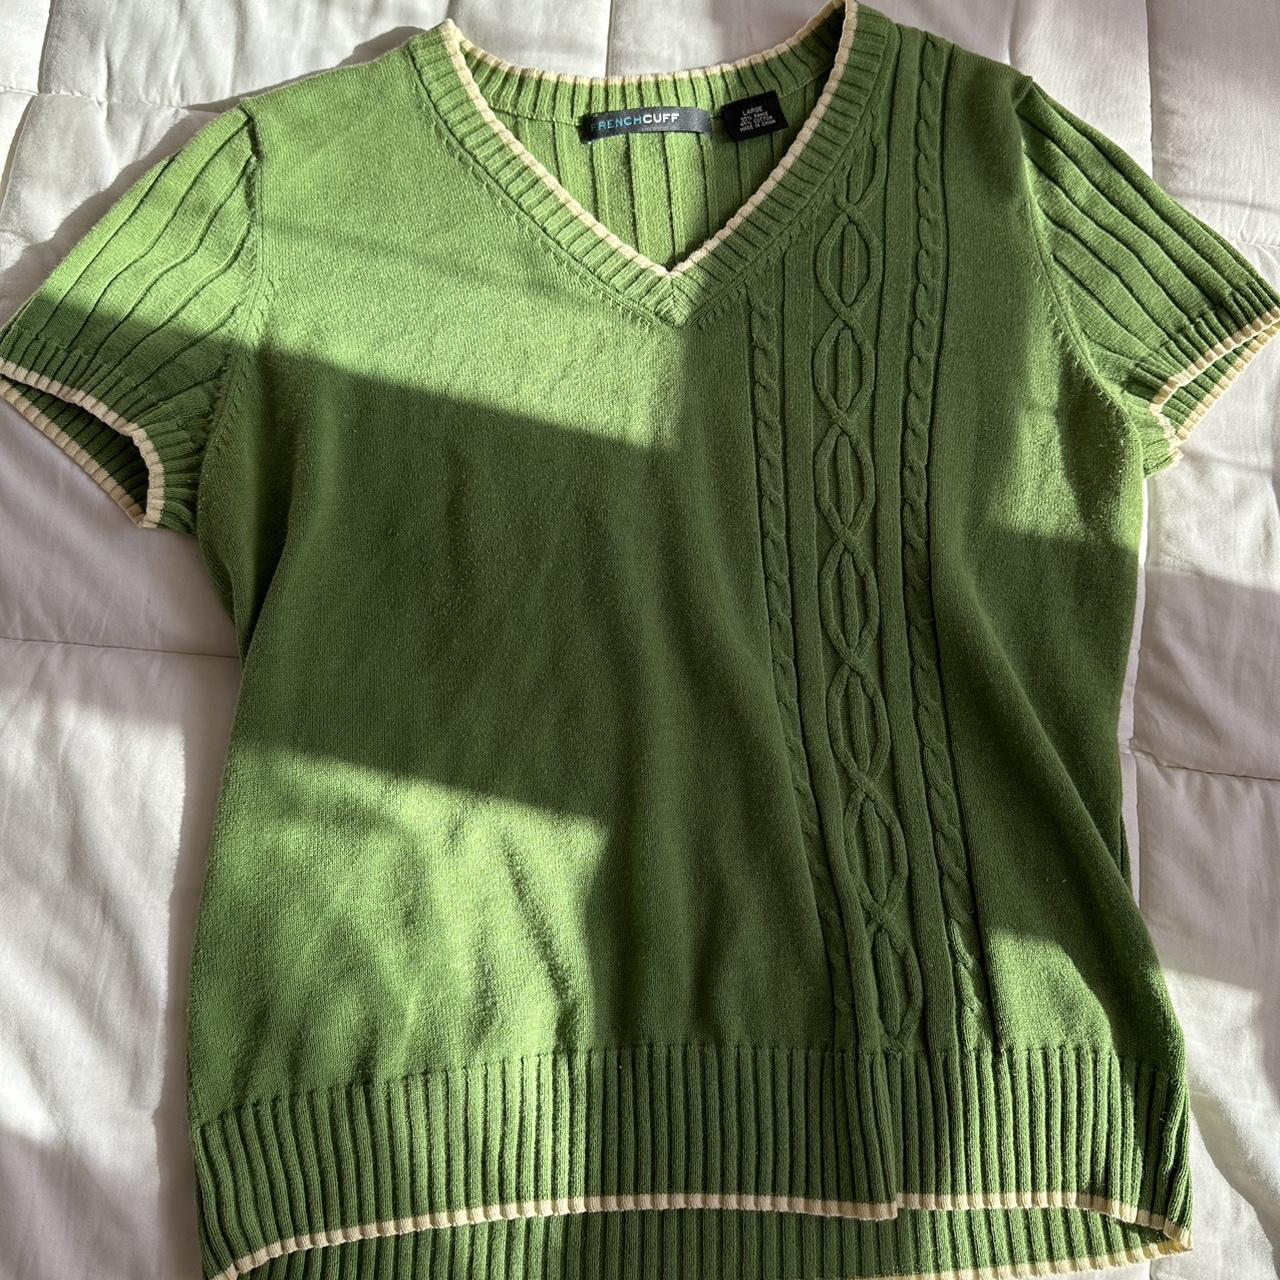 Adorable leafy green vintage sweater shirt, 🦋💕 v... - Depop